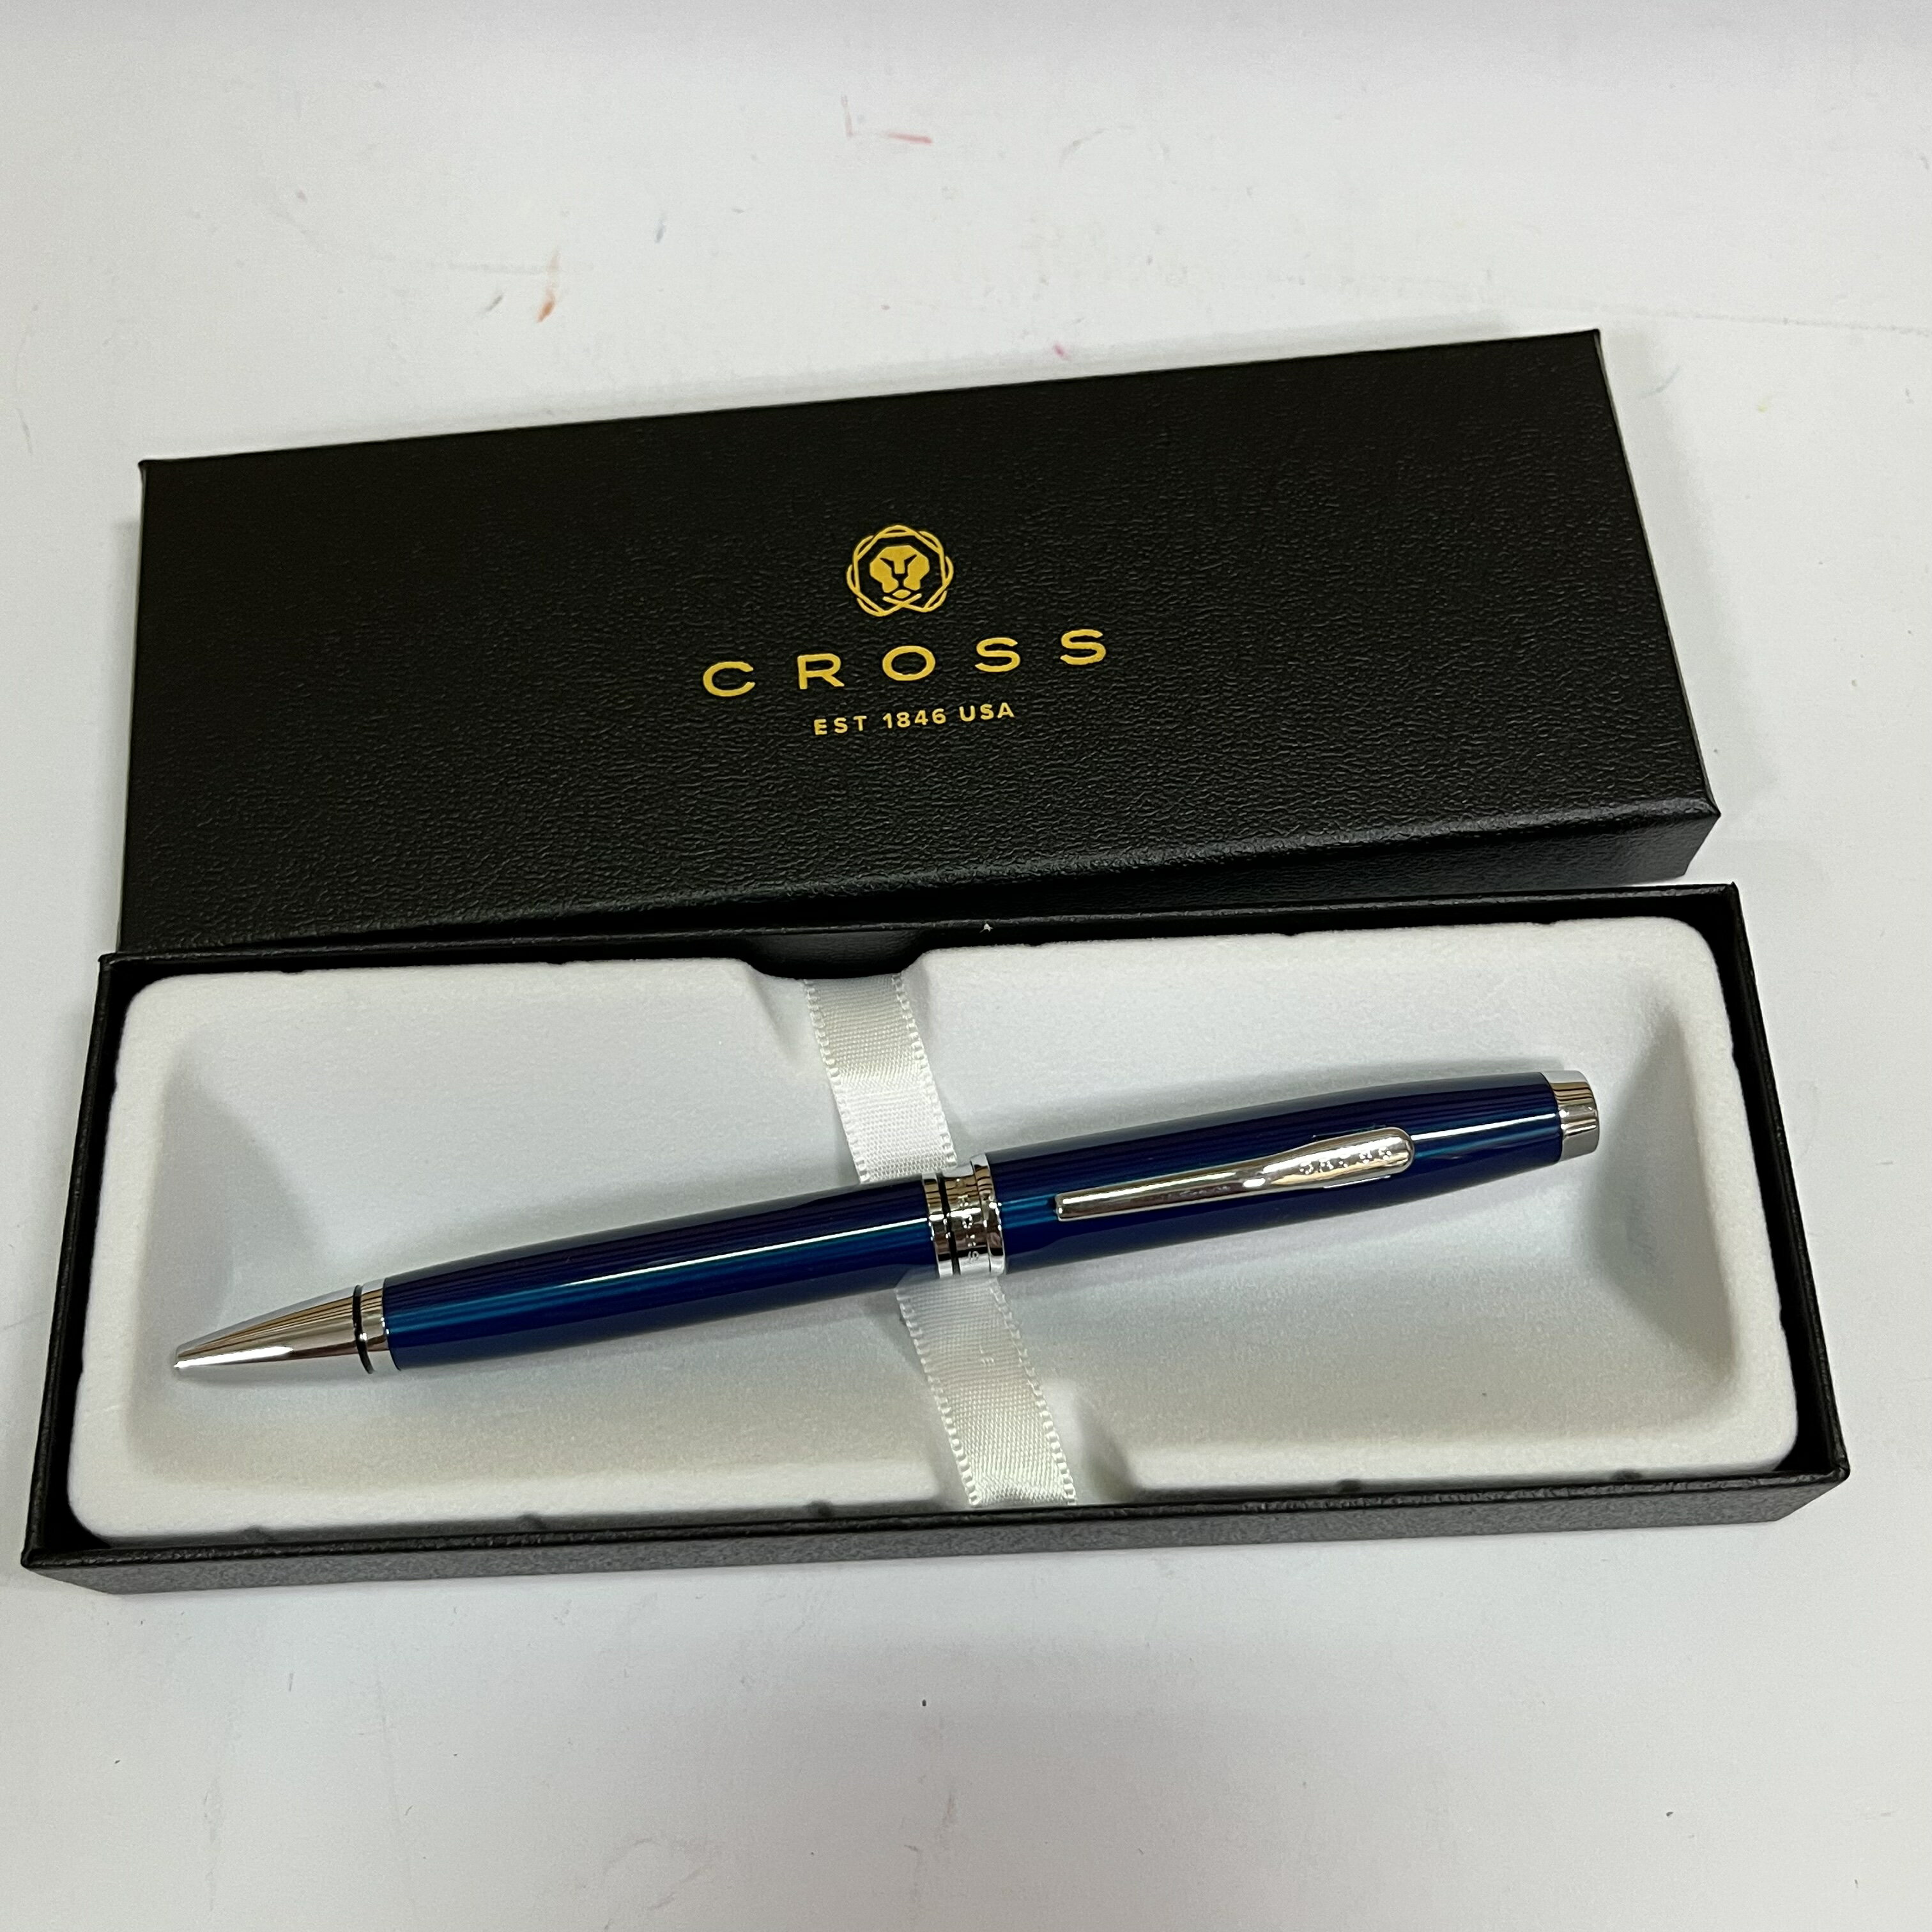 Cross 高雲系列 藍琺瑯銀夾原子筆